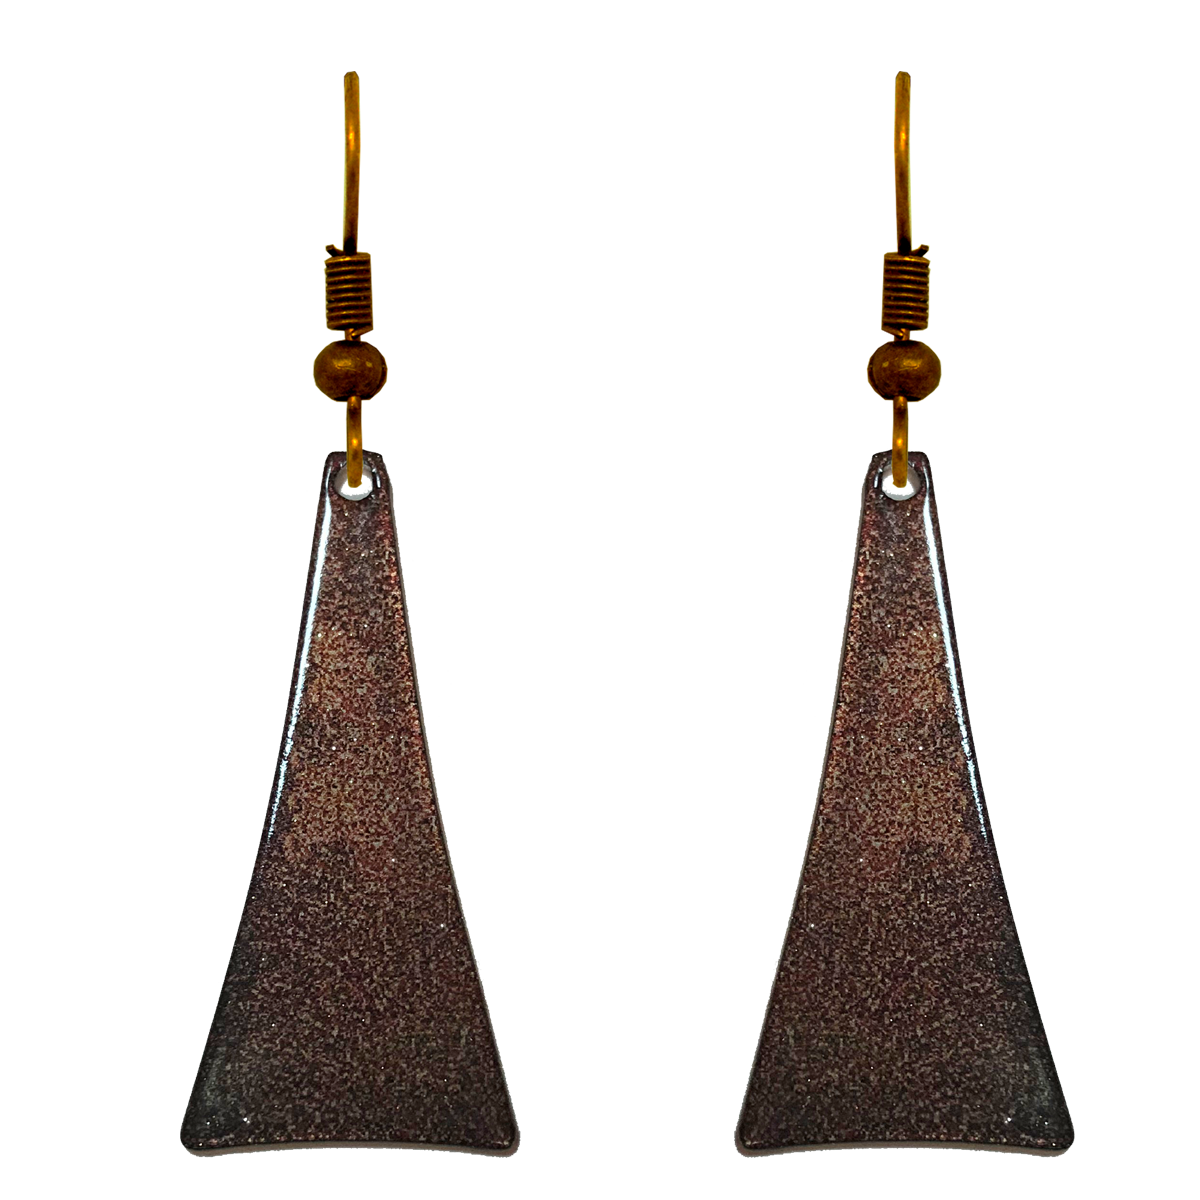 Antique Bronze Metallic 2" Triangular Taper Earrings, Item# 2477